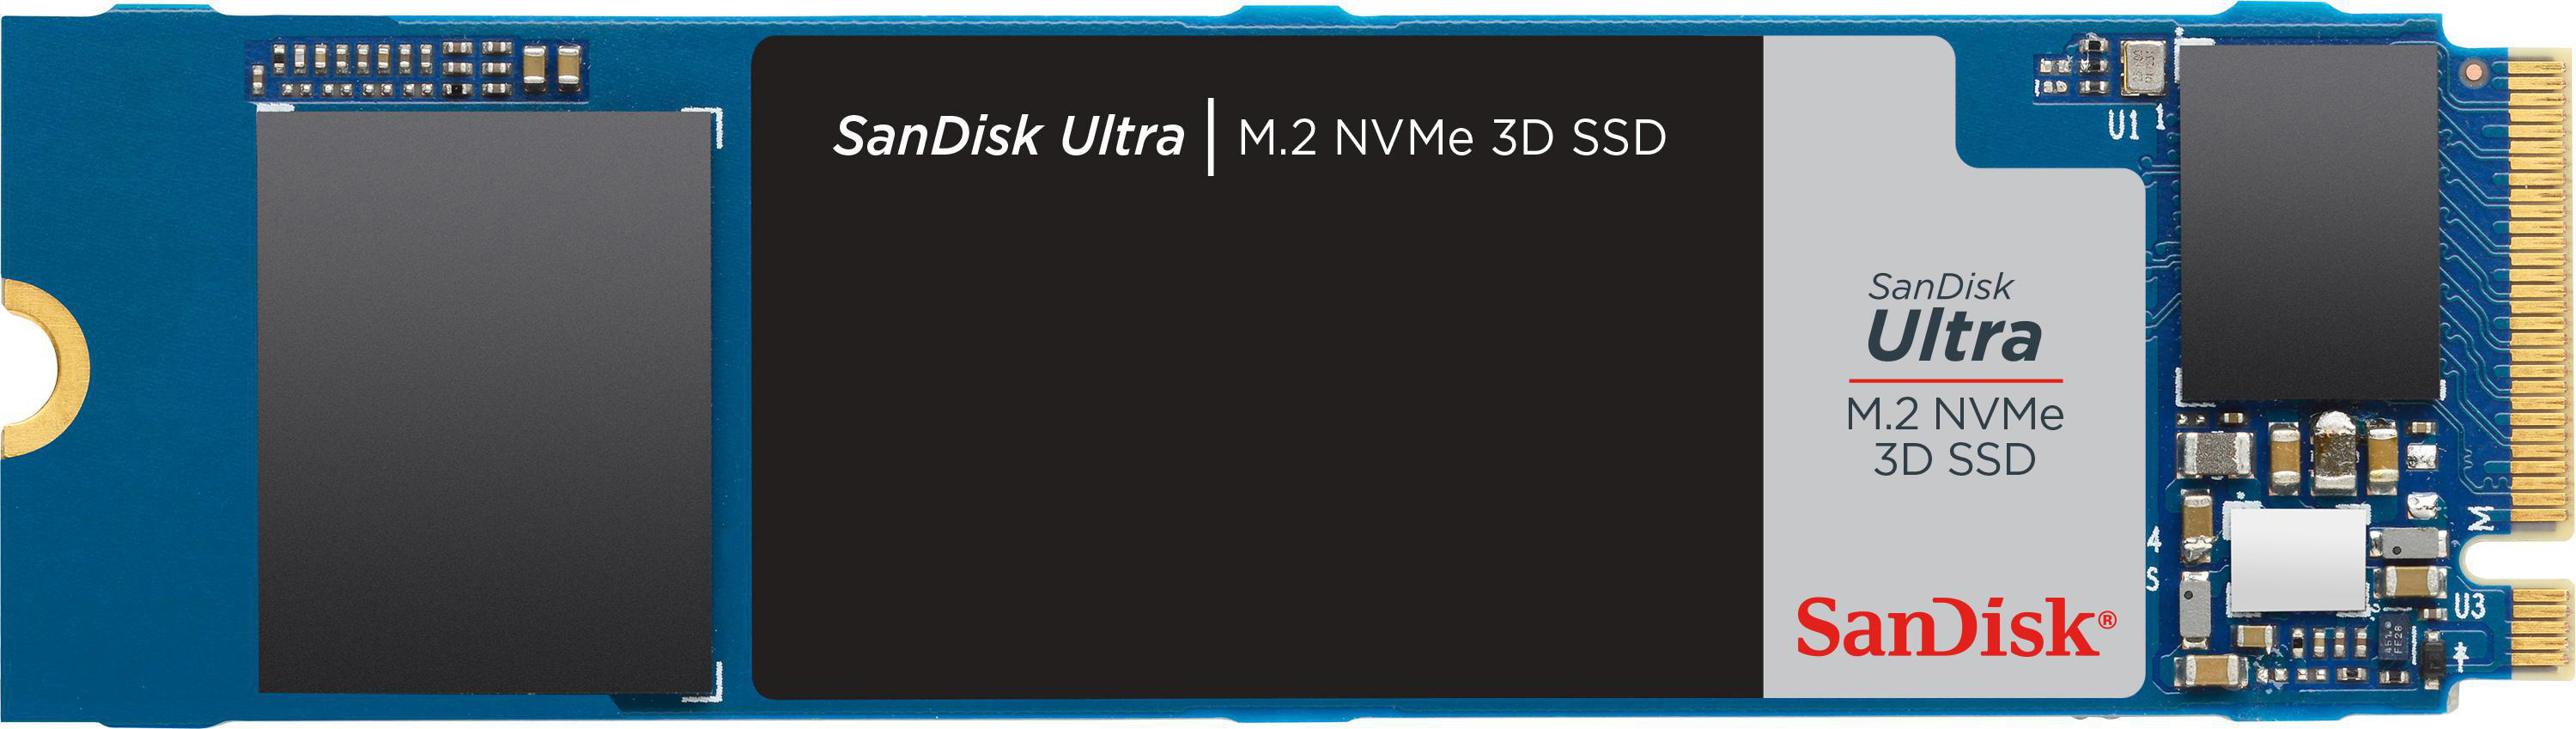 SANDISK Ultra 3D via TB Speicher, 1 intern M.2 Interner NVMe, Speicher